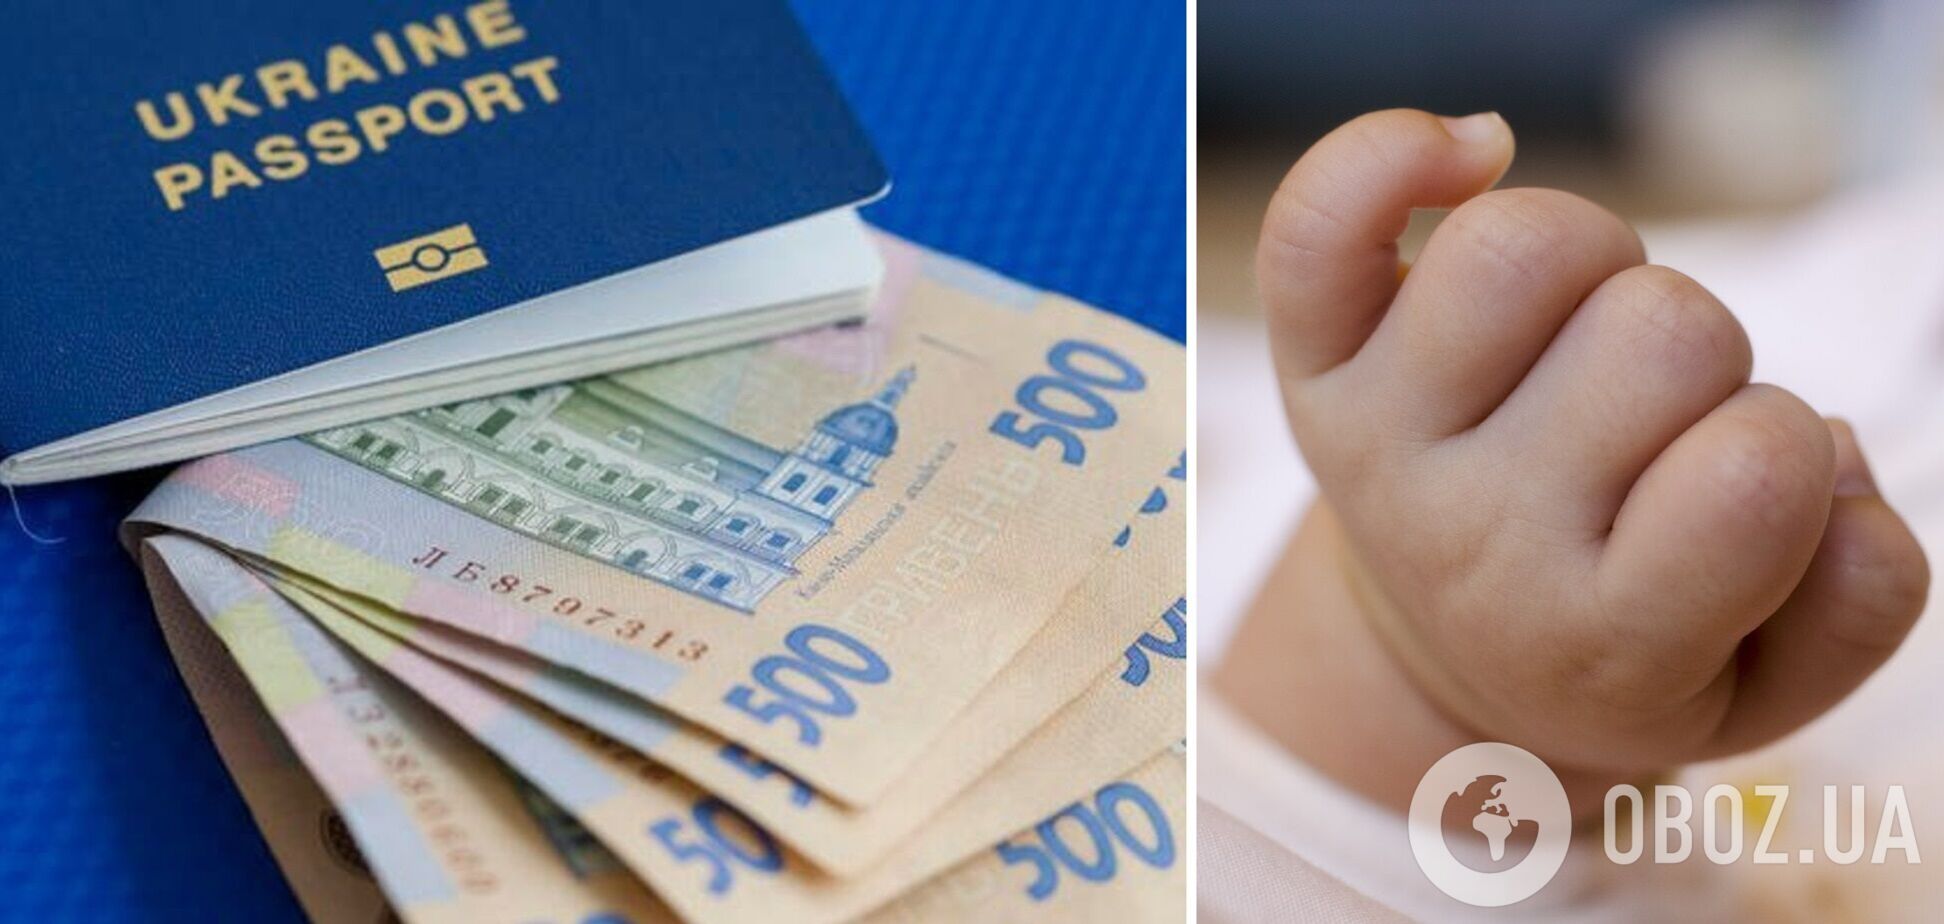 Рожденные в 2019 году получат более 600 тыс. грн на 'экономический паспорт'